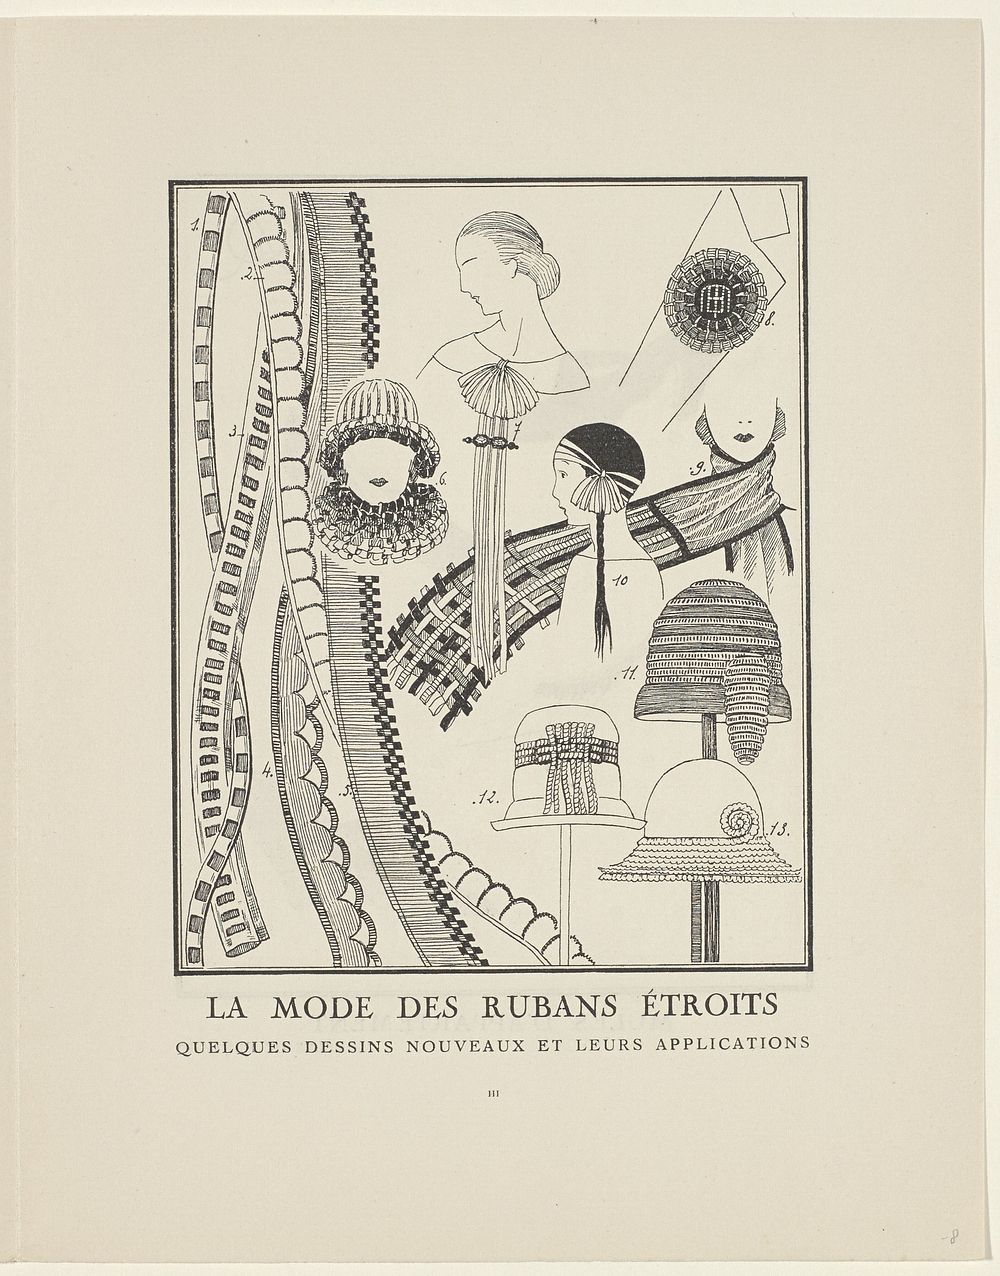 Gazette du Bon Ton, 1923 - No. 1 : p. III: La Mode des Rubans étroits (1923) by anonymous, anonymous, Lucien Vogel and…